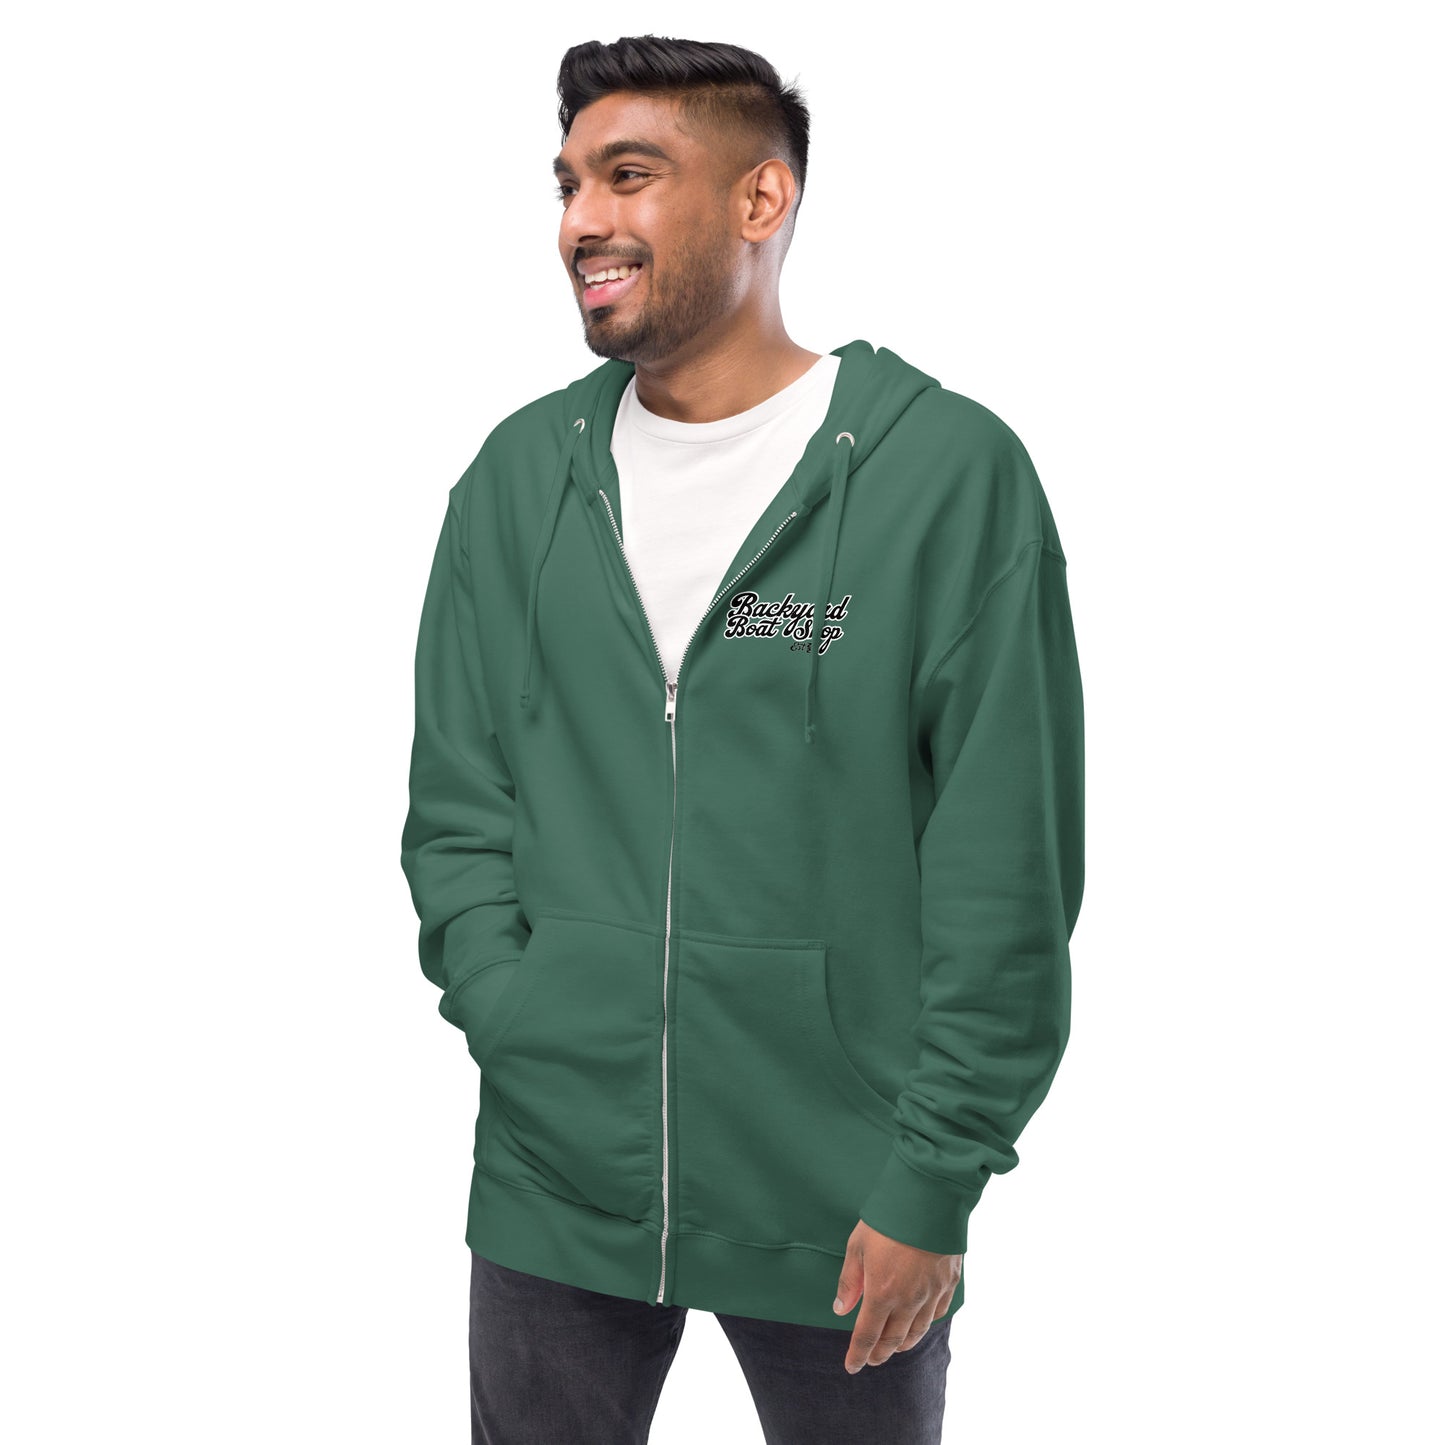 Back Print Unisex fleece zip up hoodie